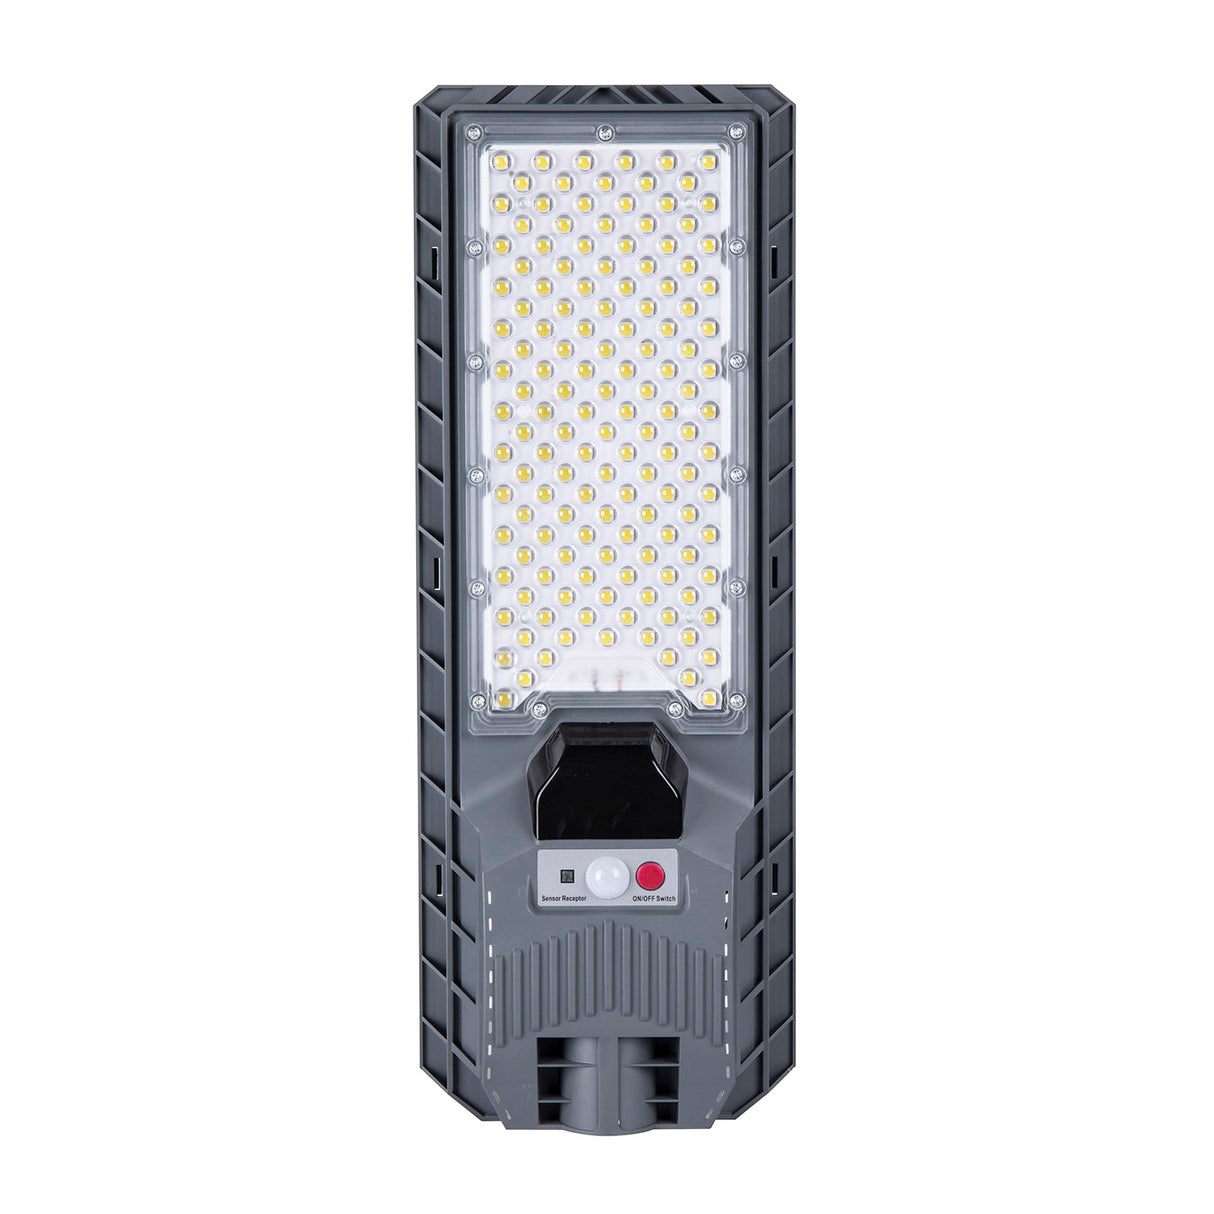 Farola LED que incorpora un sistema de alumbrado autónomo mediante energía solar. Incorpora sensor de luminosidad y movimiento.  Ideal para su instalación donde la red de energía eléctrica no puede llegar. Incluye mando a distancia para su control y configuración.